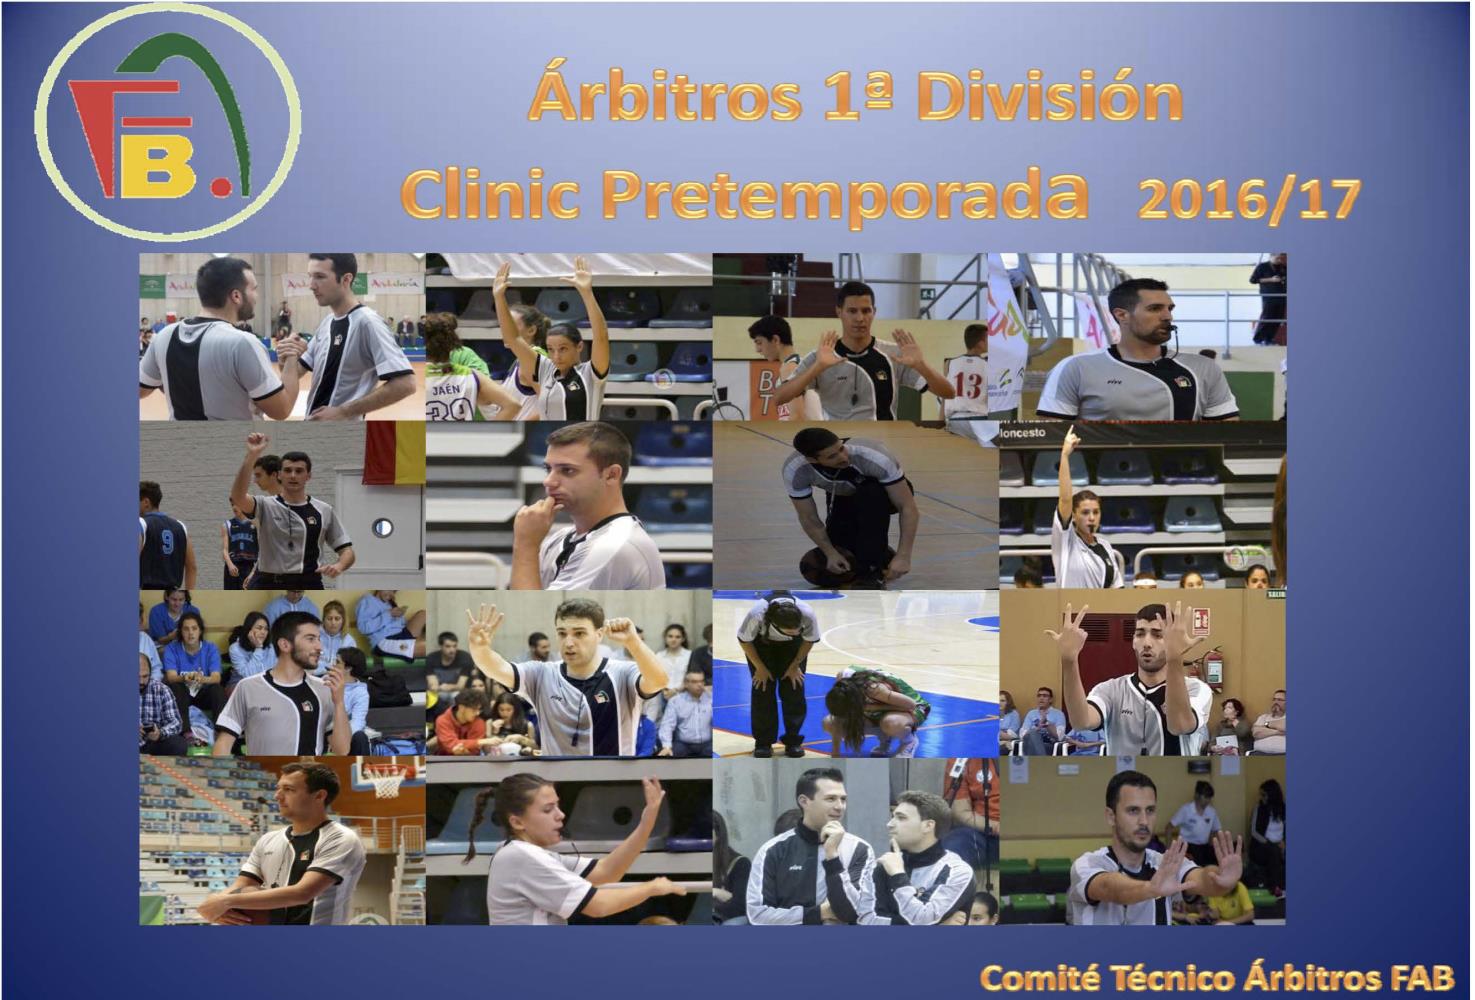 Clinic pretempora árbitros 1ª División Nacional 2016 - 17 